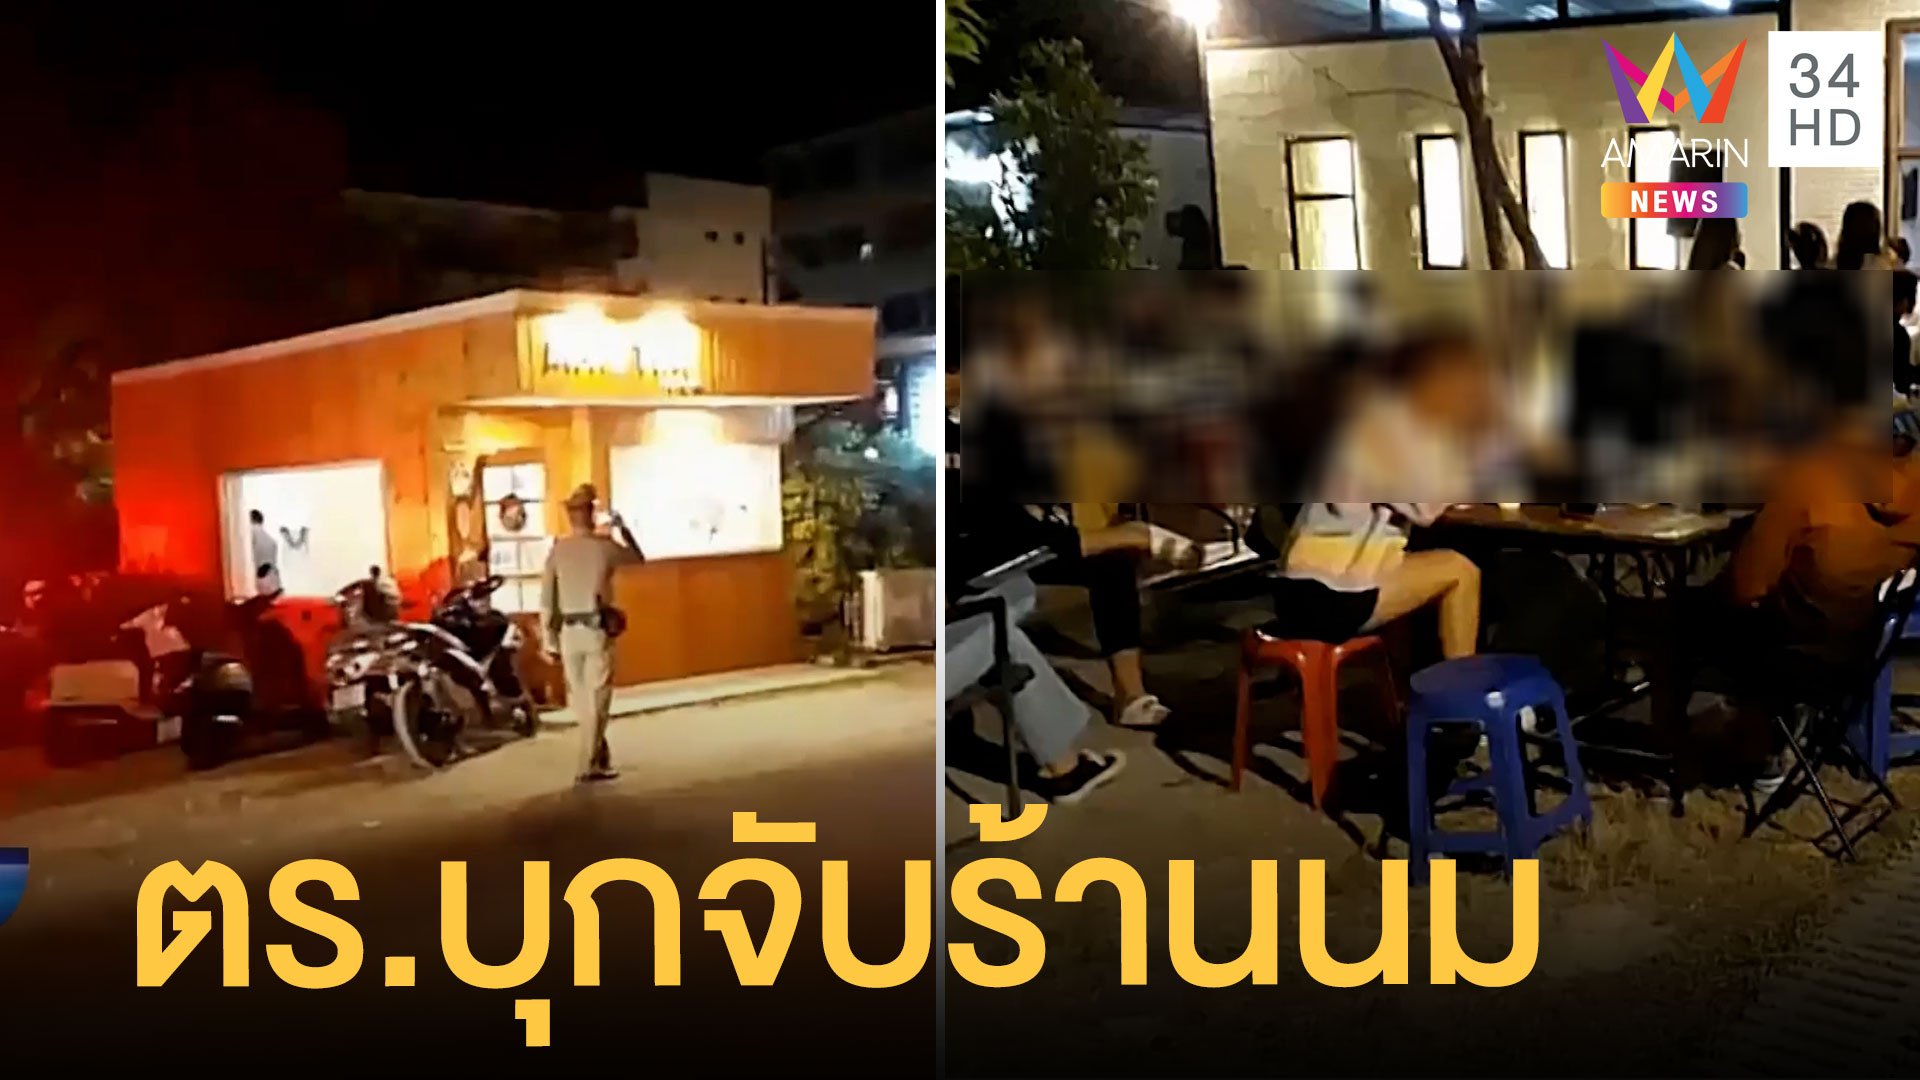 ตำรวจบุกจับร้านขายนมบางแสน แอบขายเบียร์ | ข่าวเที่ยงอมรินทร์ | 8 ธ.ค. 64 | AMARIN TVHD34